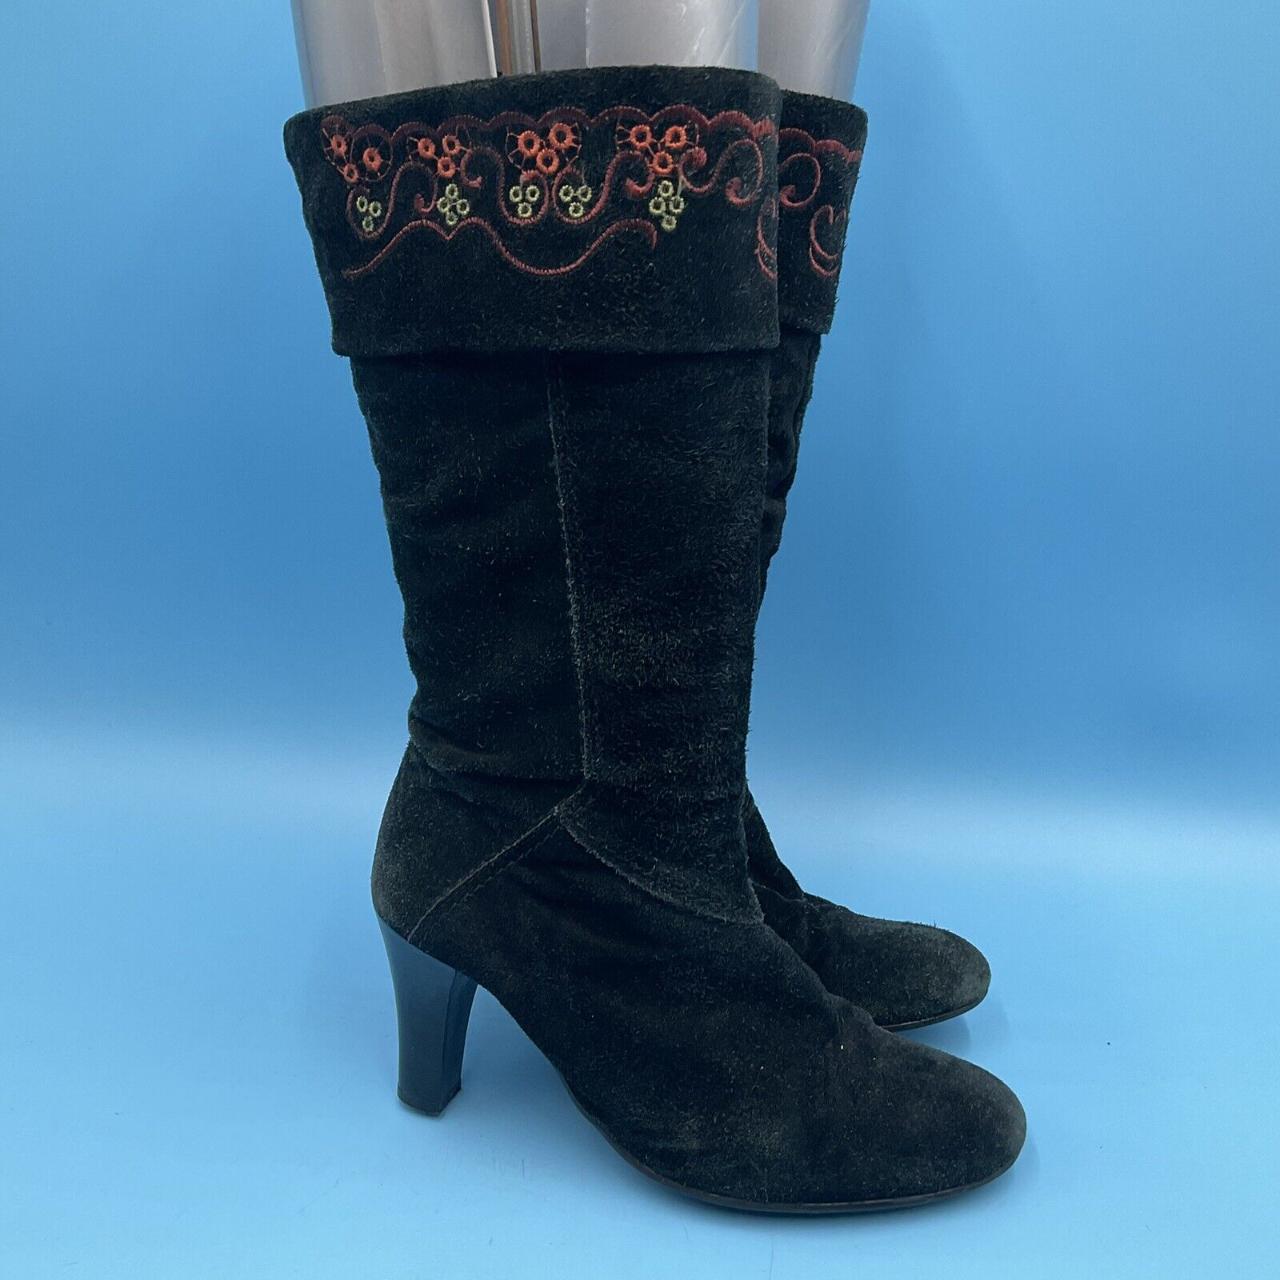 Clarks Women’s Mid-Calf Black Suede Heel Boots - UK... - Depop